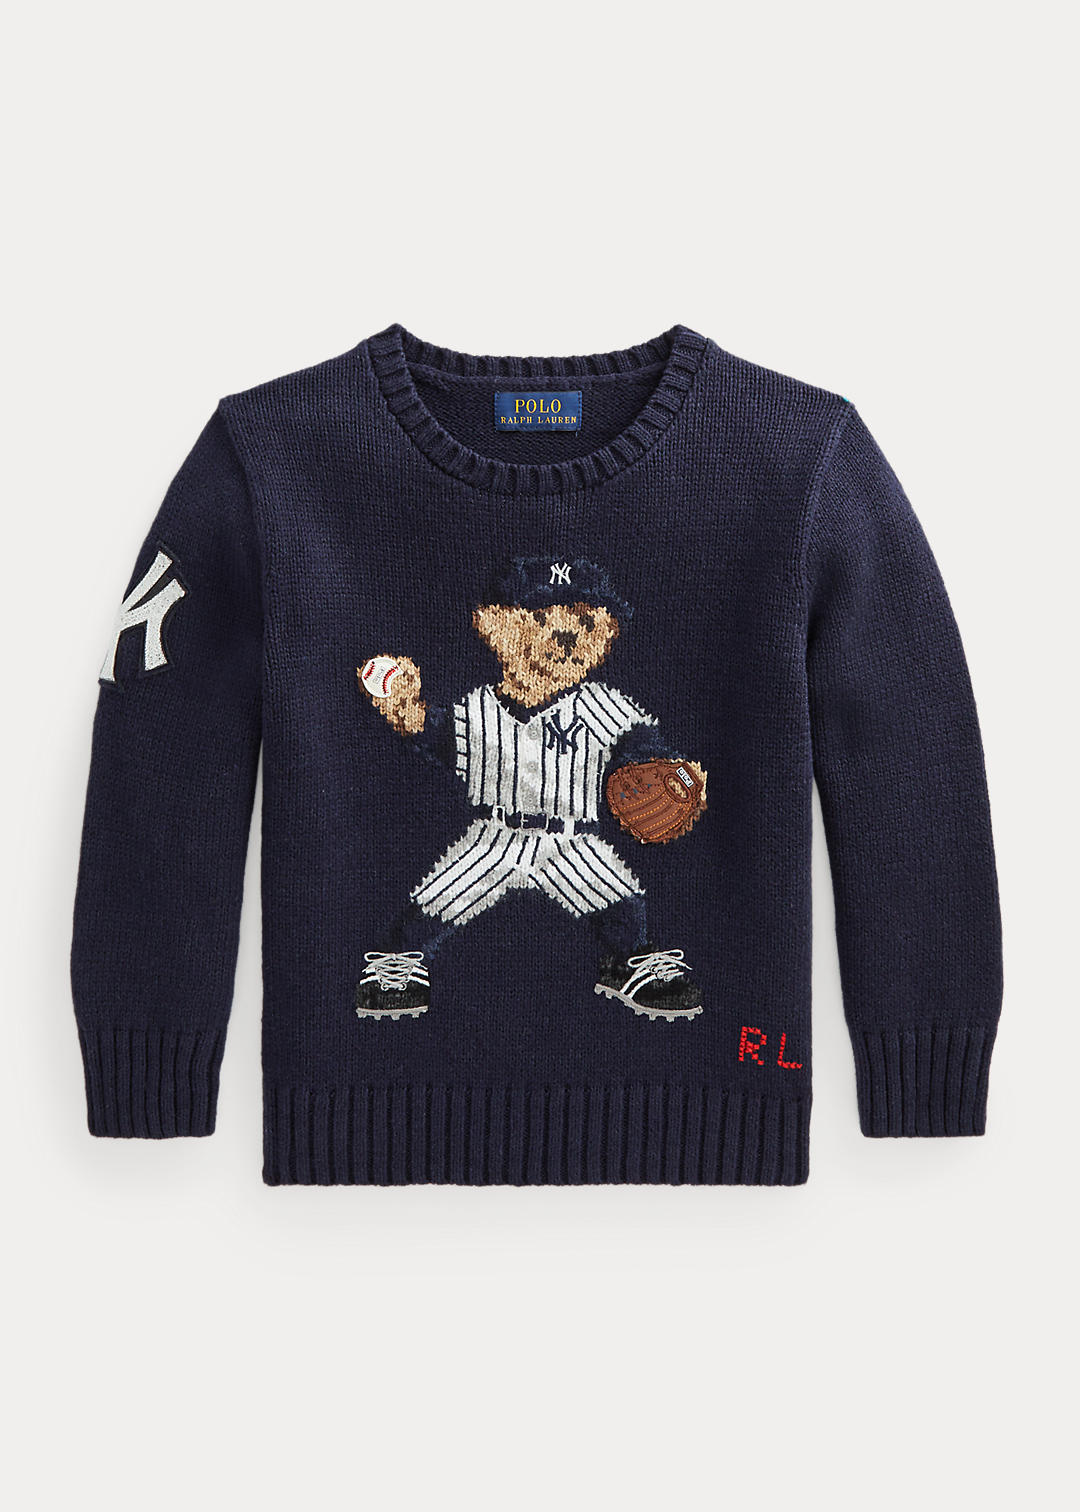 deeltje Elektropositief openbaar Polo Ralph Lauren Yankees Bear Sweater